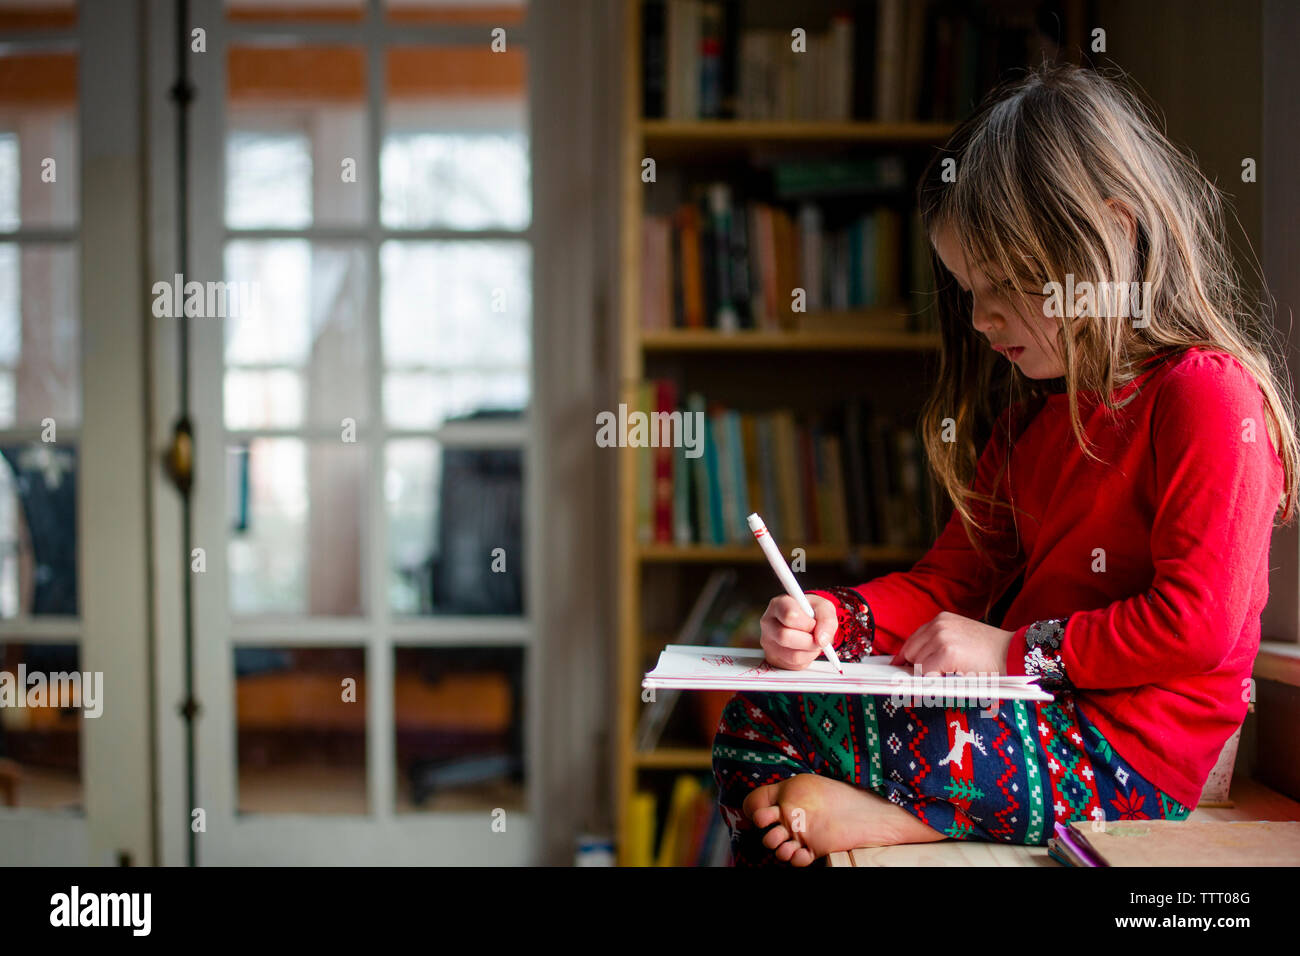 Una niña sentada descalza por una estantería escribiendo en un bloc de notas Foto de stock